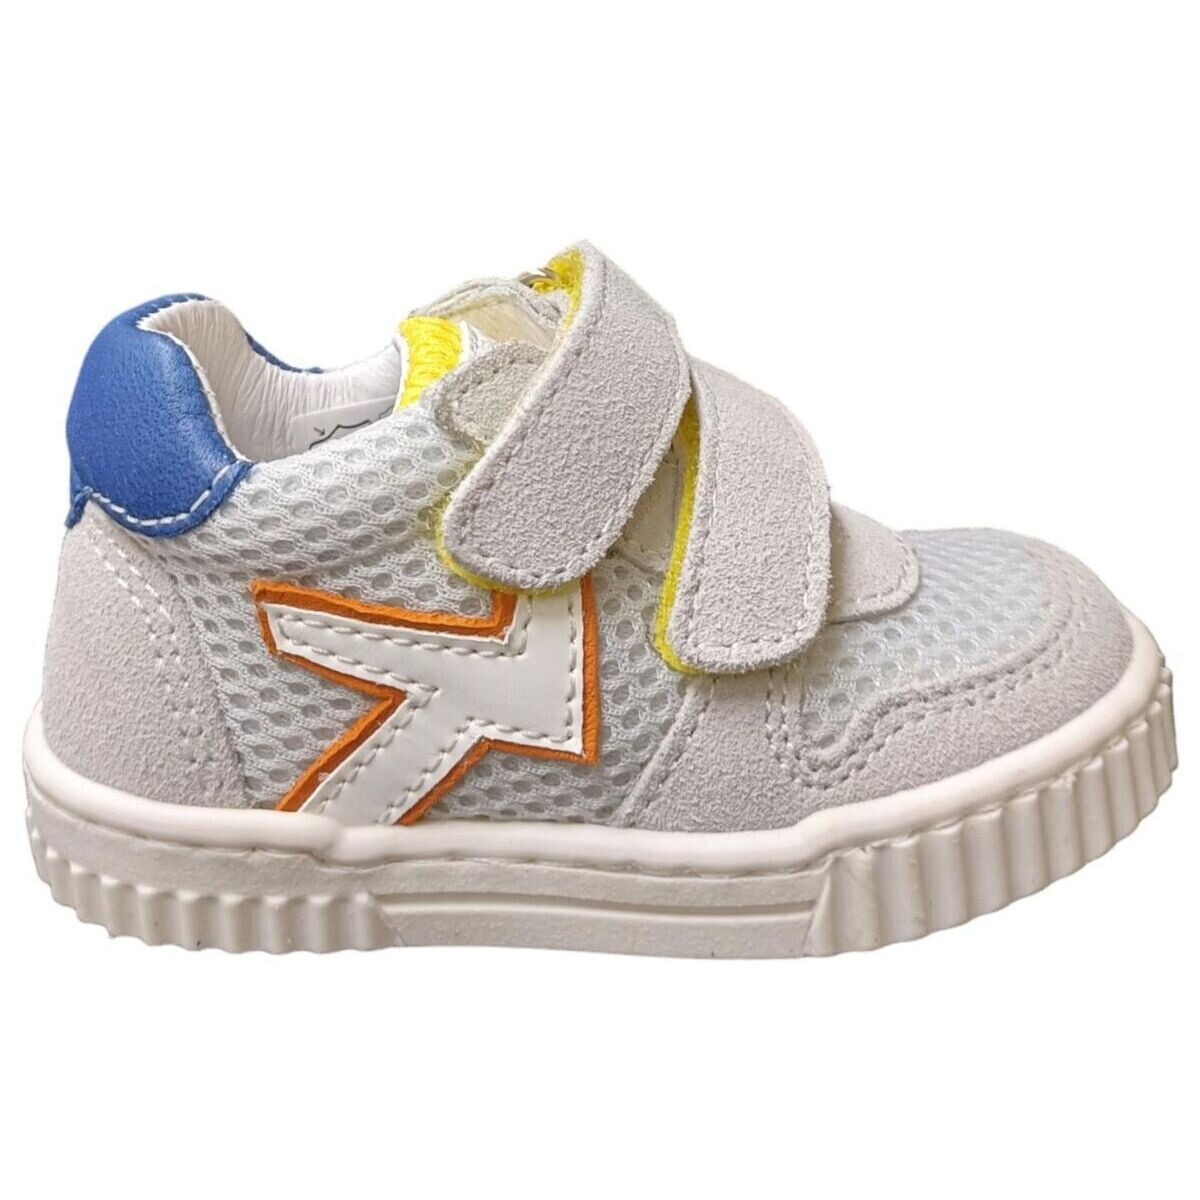 Schuhe Kinder Sneaker Balocchi MINI Multicolor